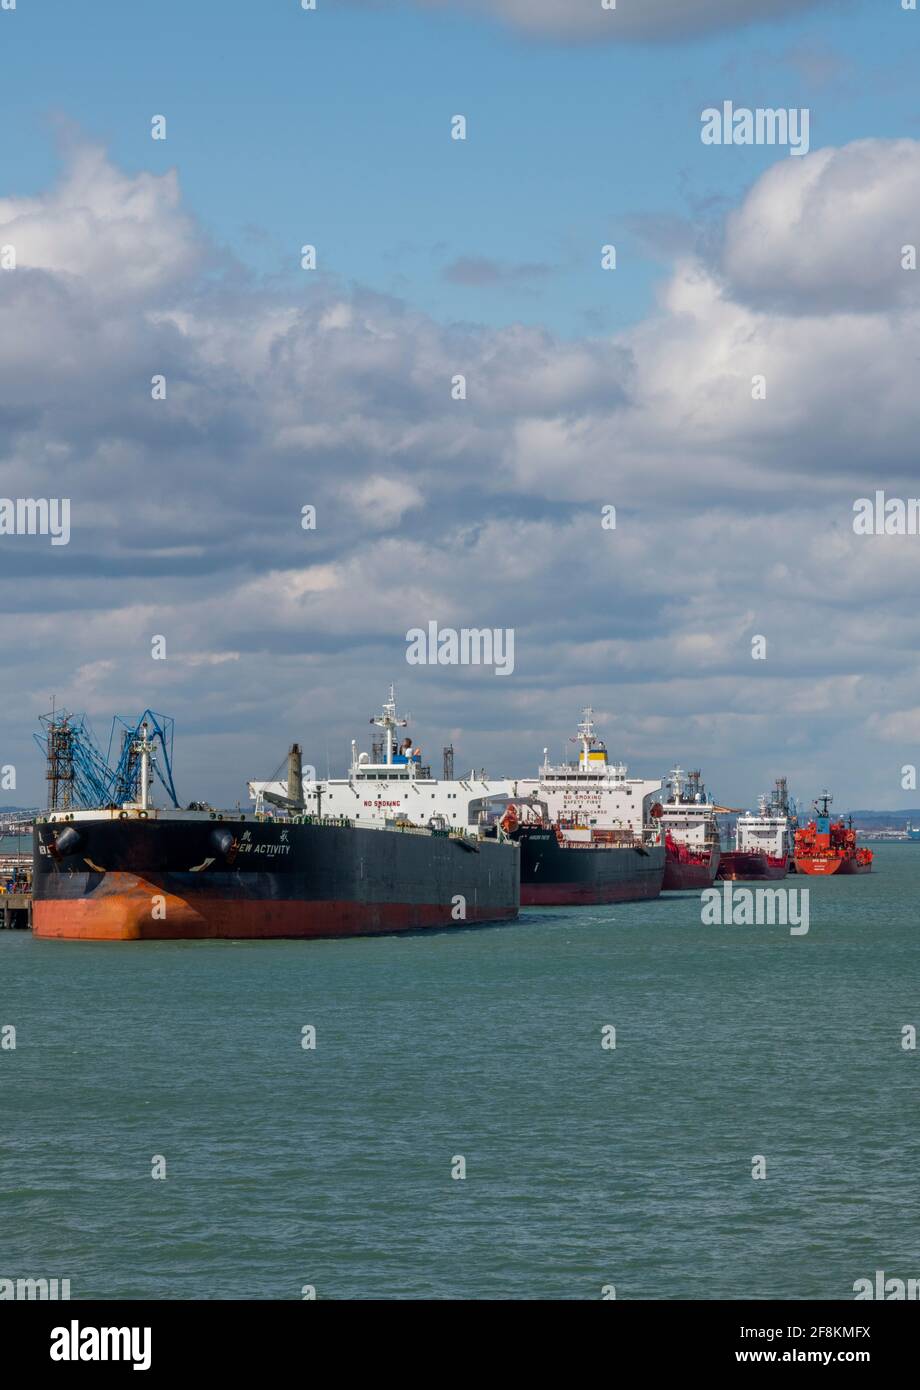 Große Öltanker und Schiffe mit Schifffahrt an der esso fawley Marine Oil Raffinery Terminal Processing plant in southampton Docks. Stockfoto